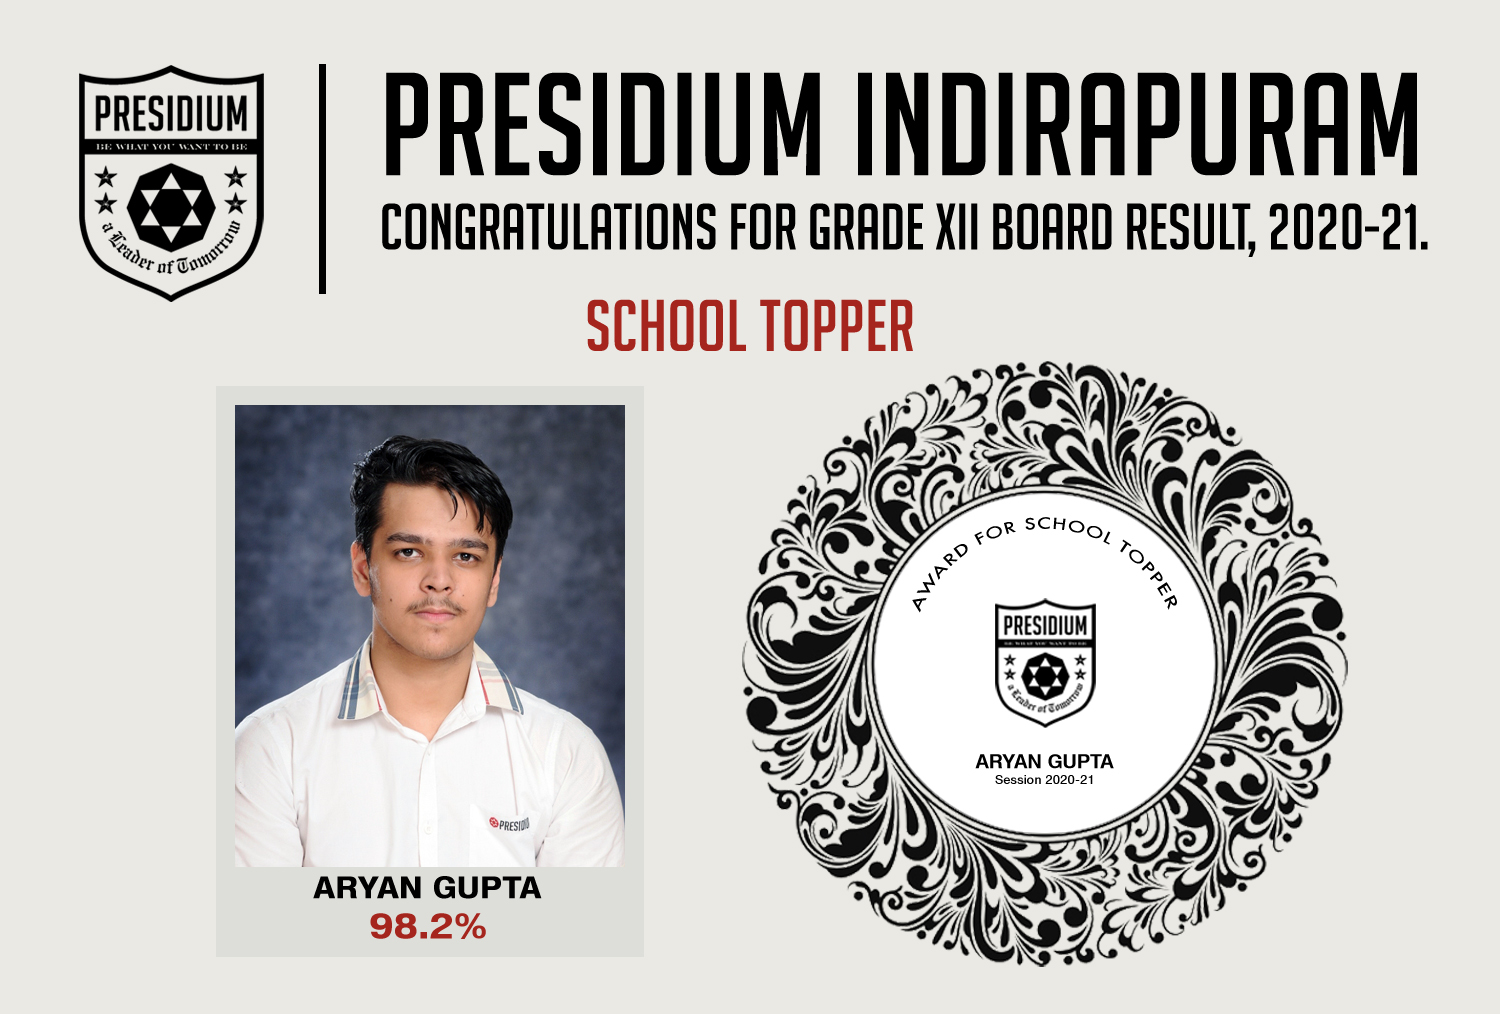 Presidium Indirapuram, CONGRATULATIONS STUDENTS FOR BRILLIANT 12TH BOARD RESULTS! 